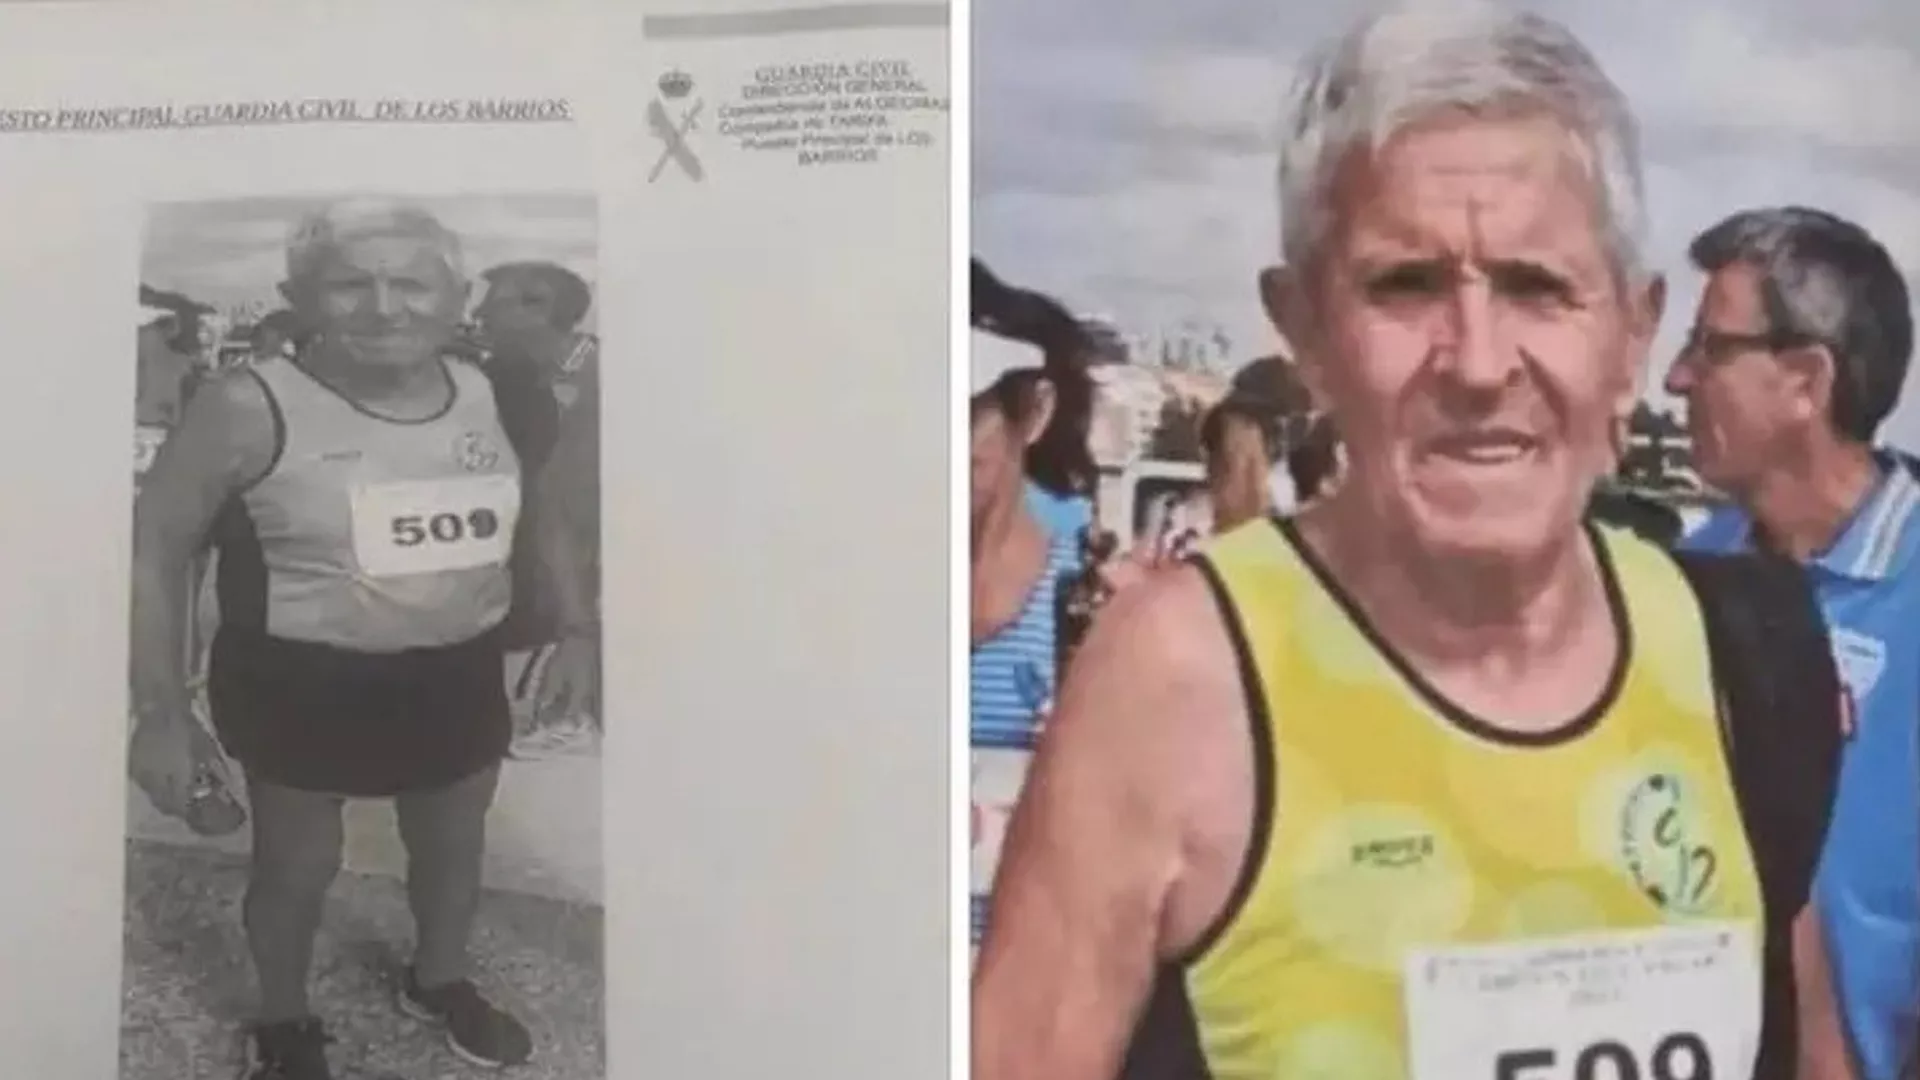 Buscan a un hombre de 77 años desaparecido en Medina Sidonia desde el domingo